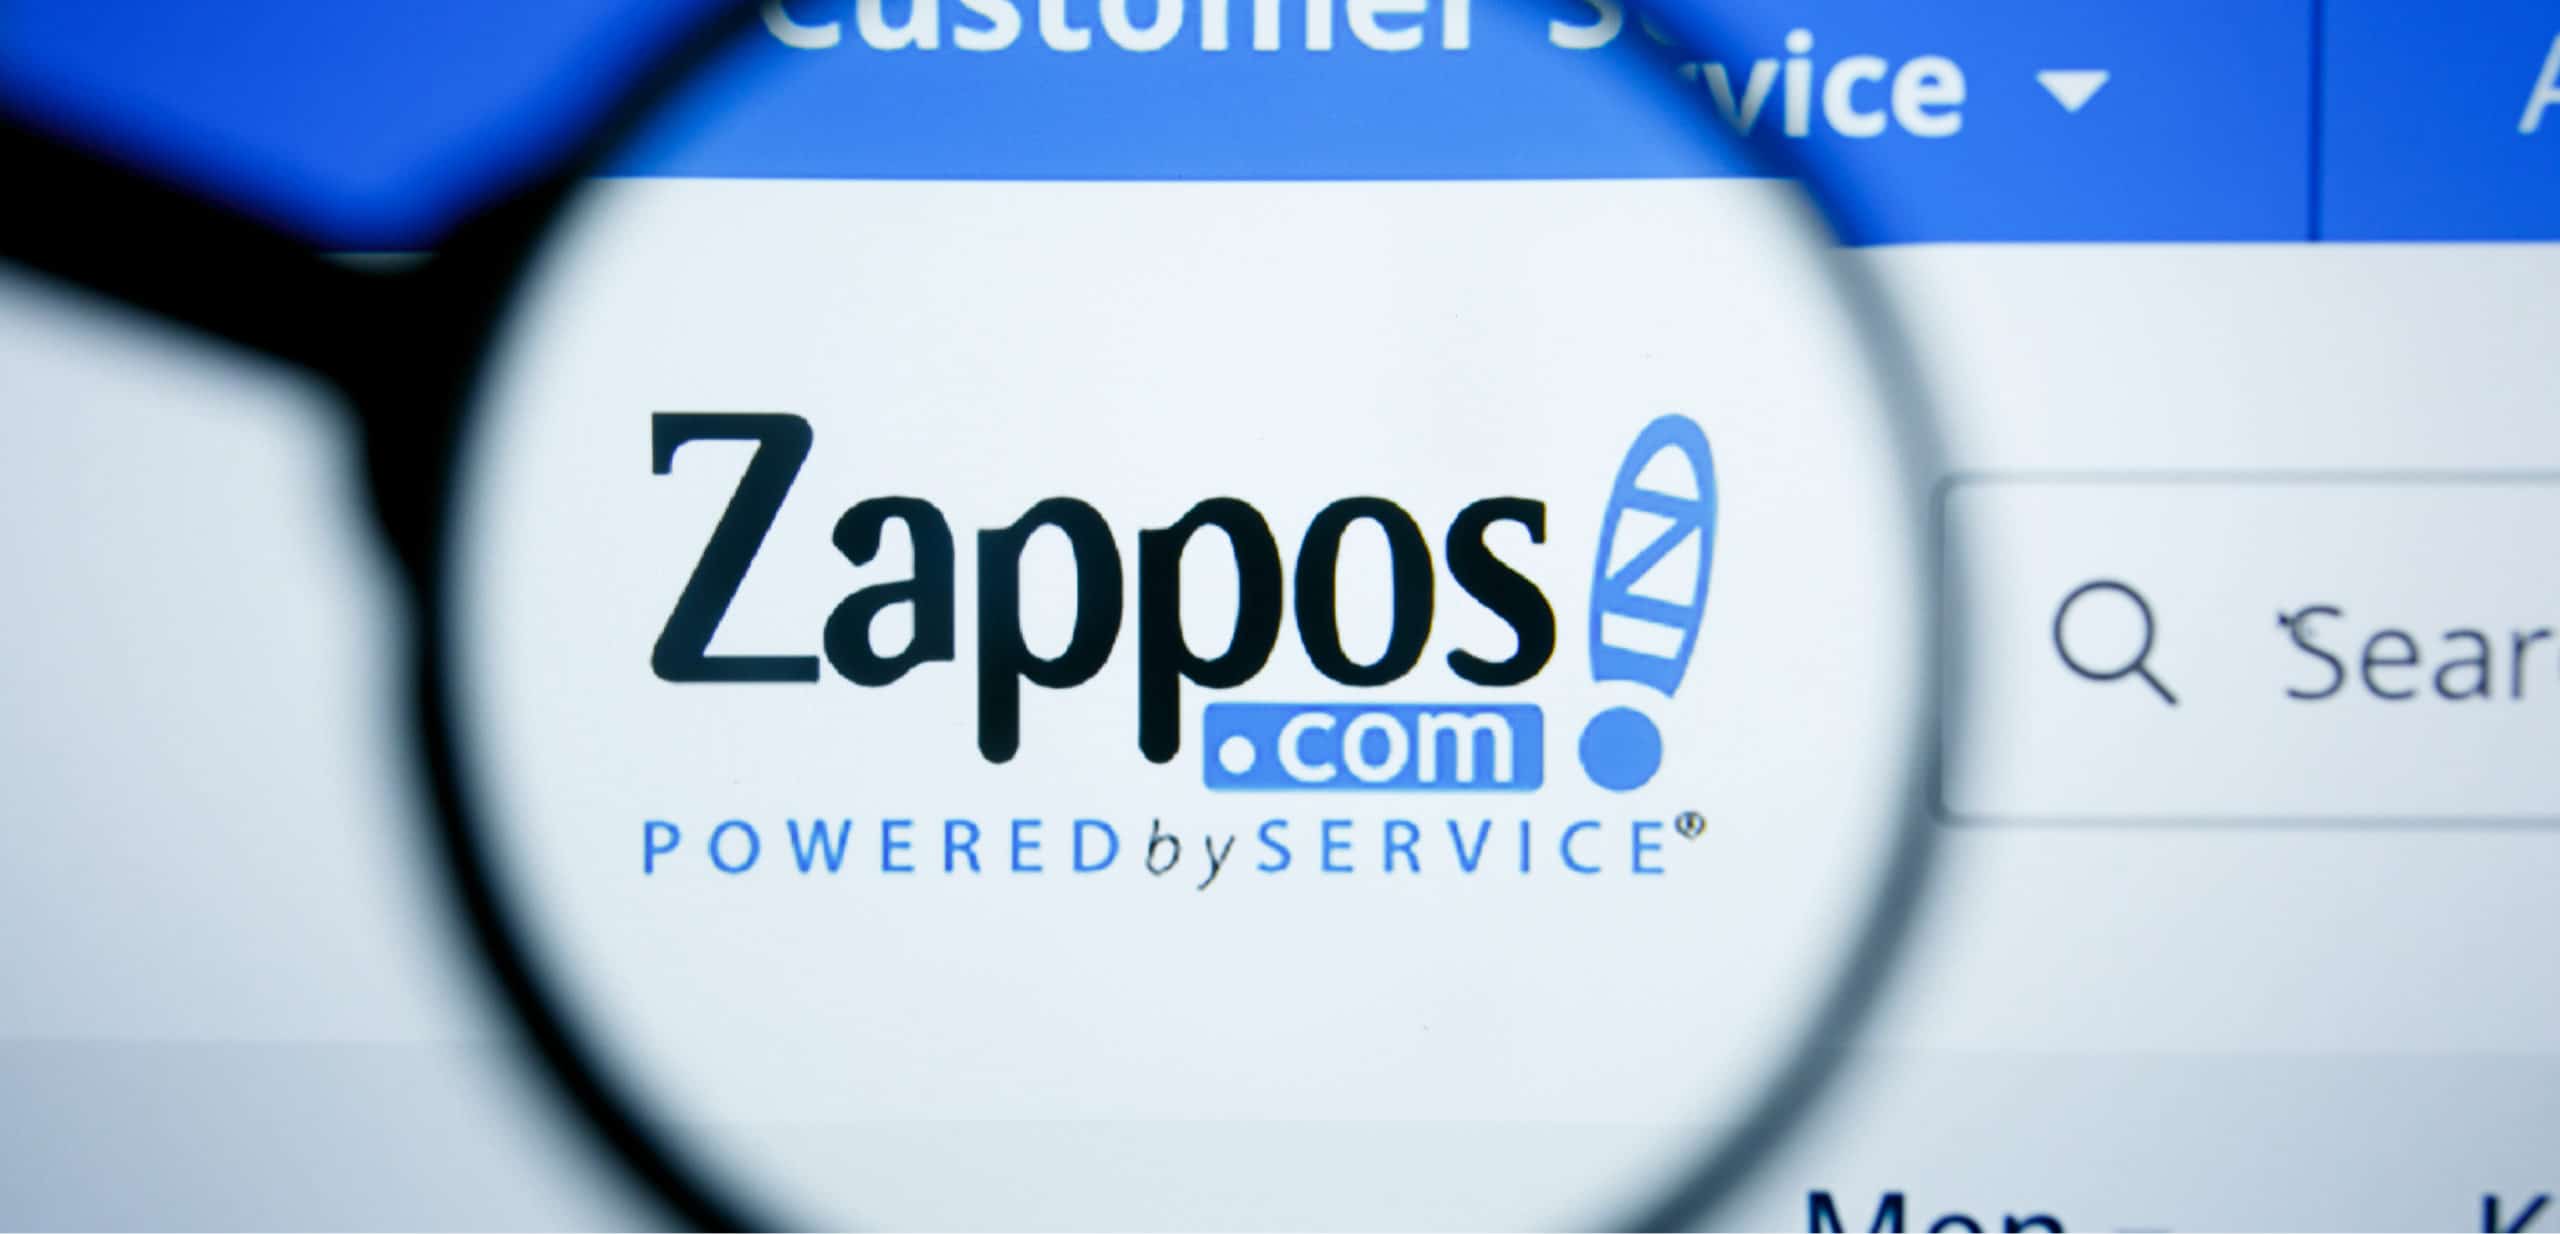 chiên lược định vị bằng dịch vụ khách hàng (Customer Service Positioning) của thương hiệu Zappos